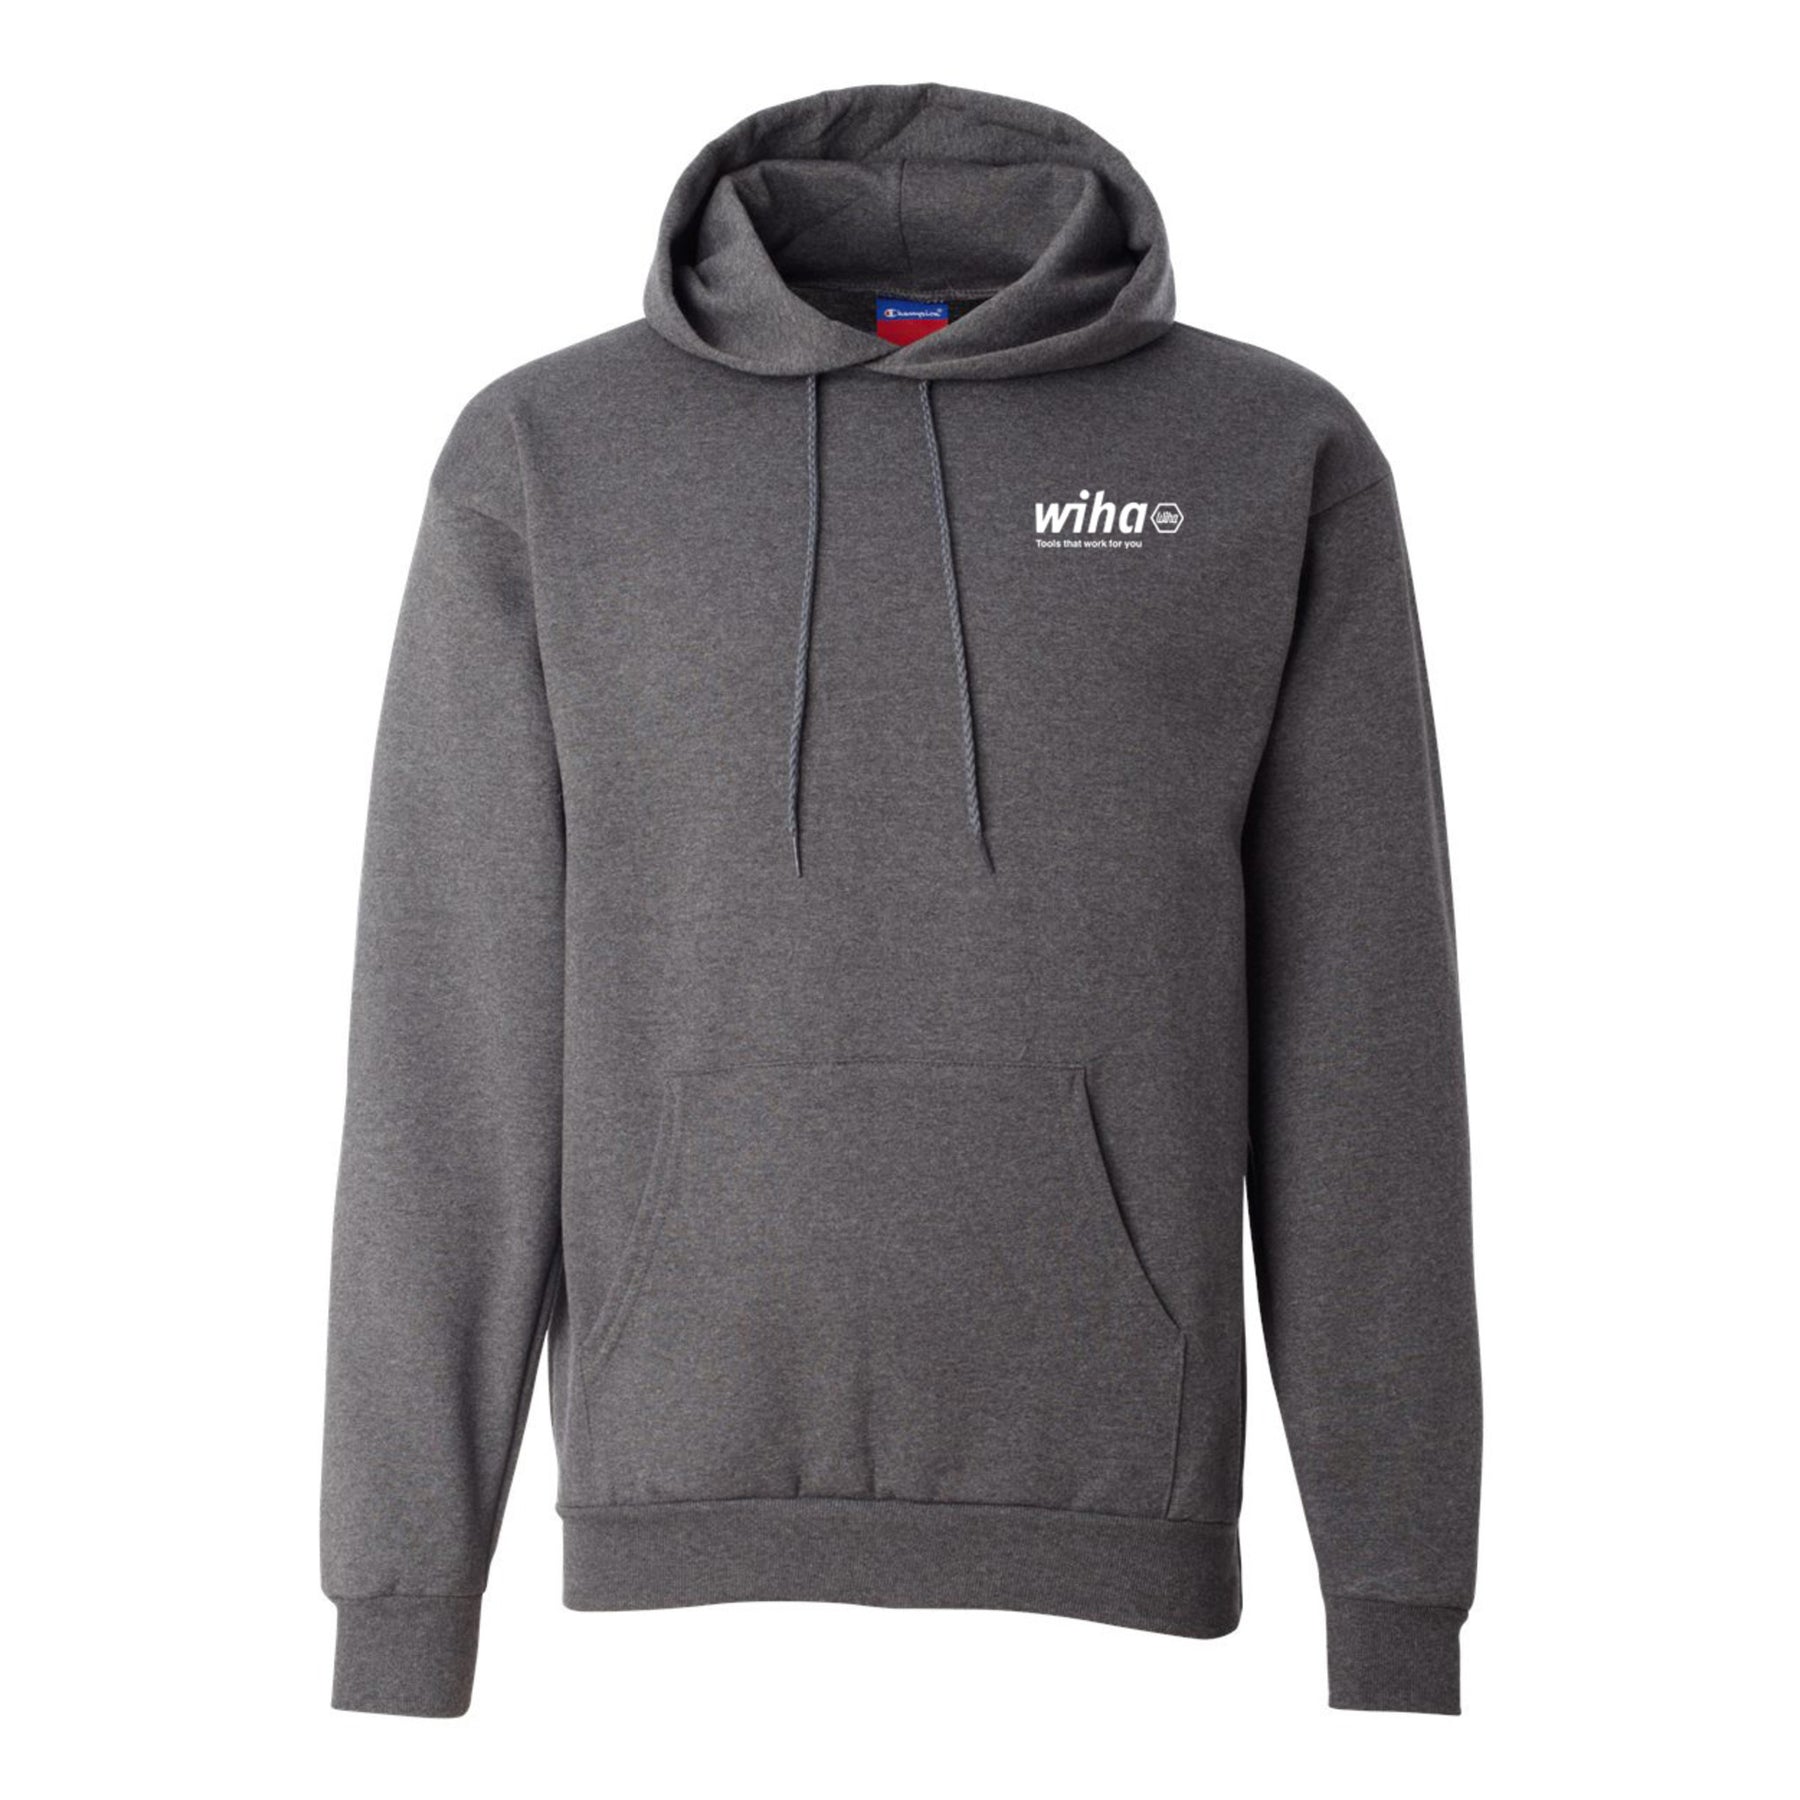 Wiha 91654 Wiha Unisex Hooded Sweatshirt Charcoal Grey XL